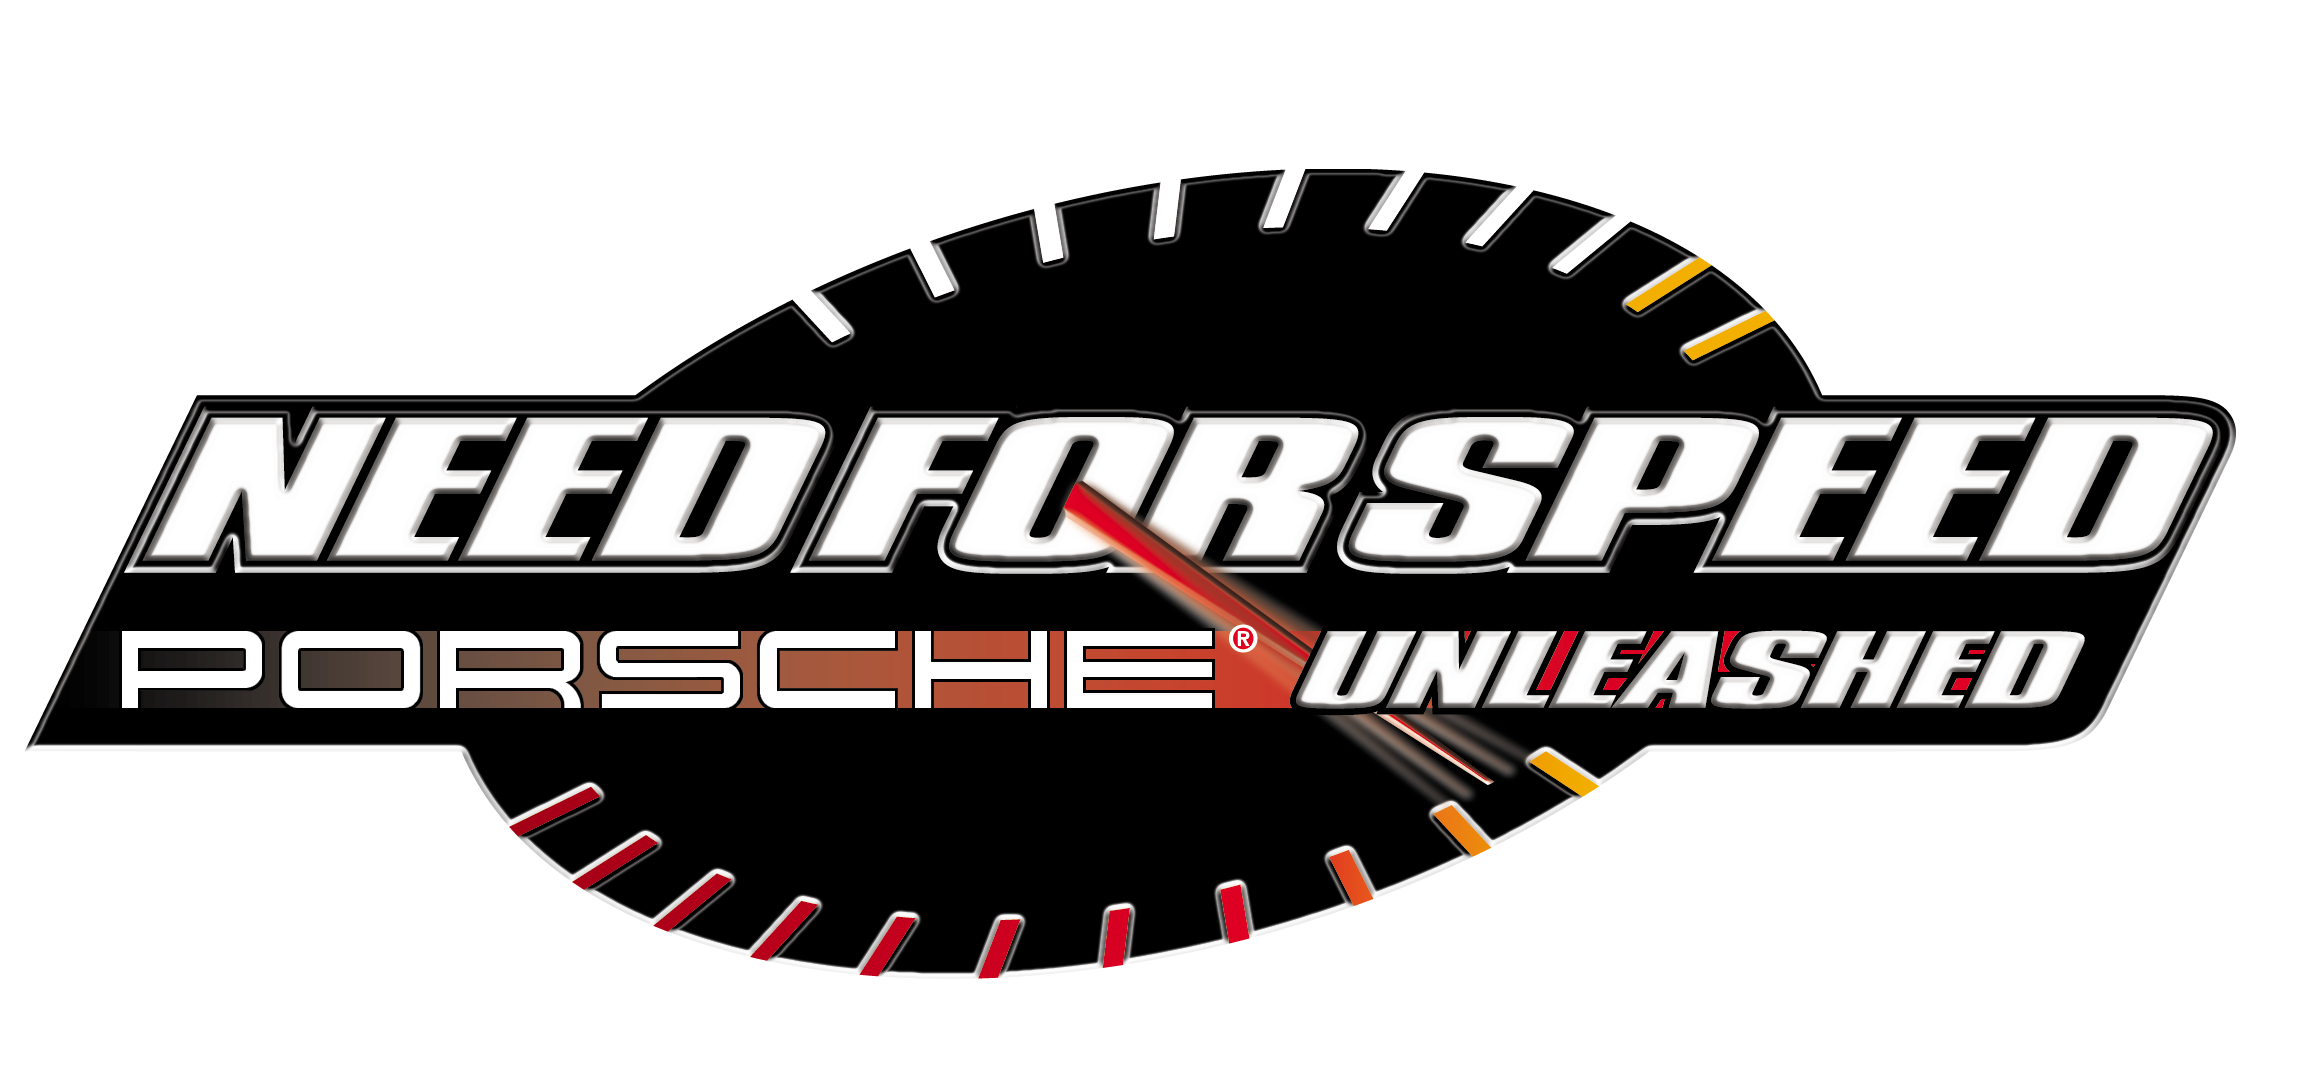 Ник спид. NFS Porsche unleashed logo. Need for Speed: Porsche unleashed. Need for Speed Porsche unleashed лого. NFS Порше.